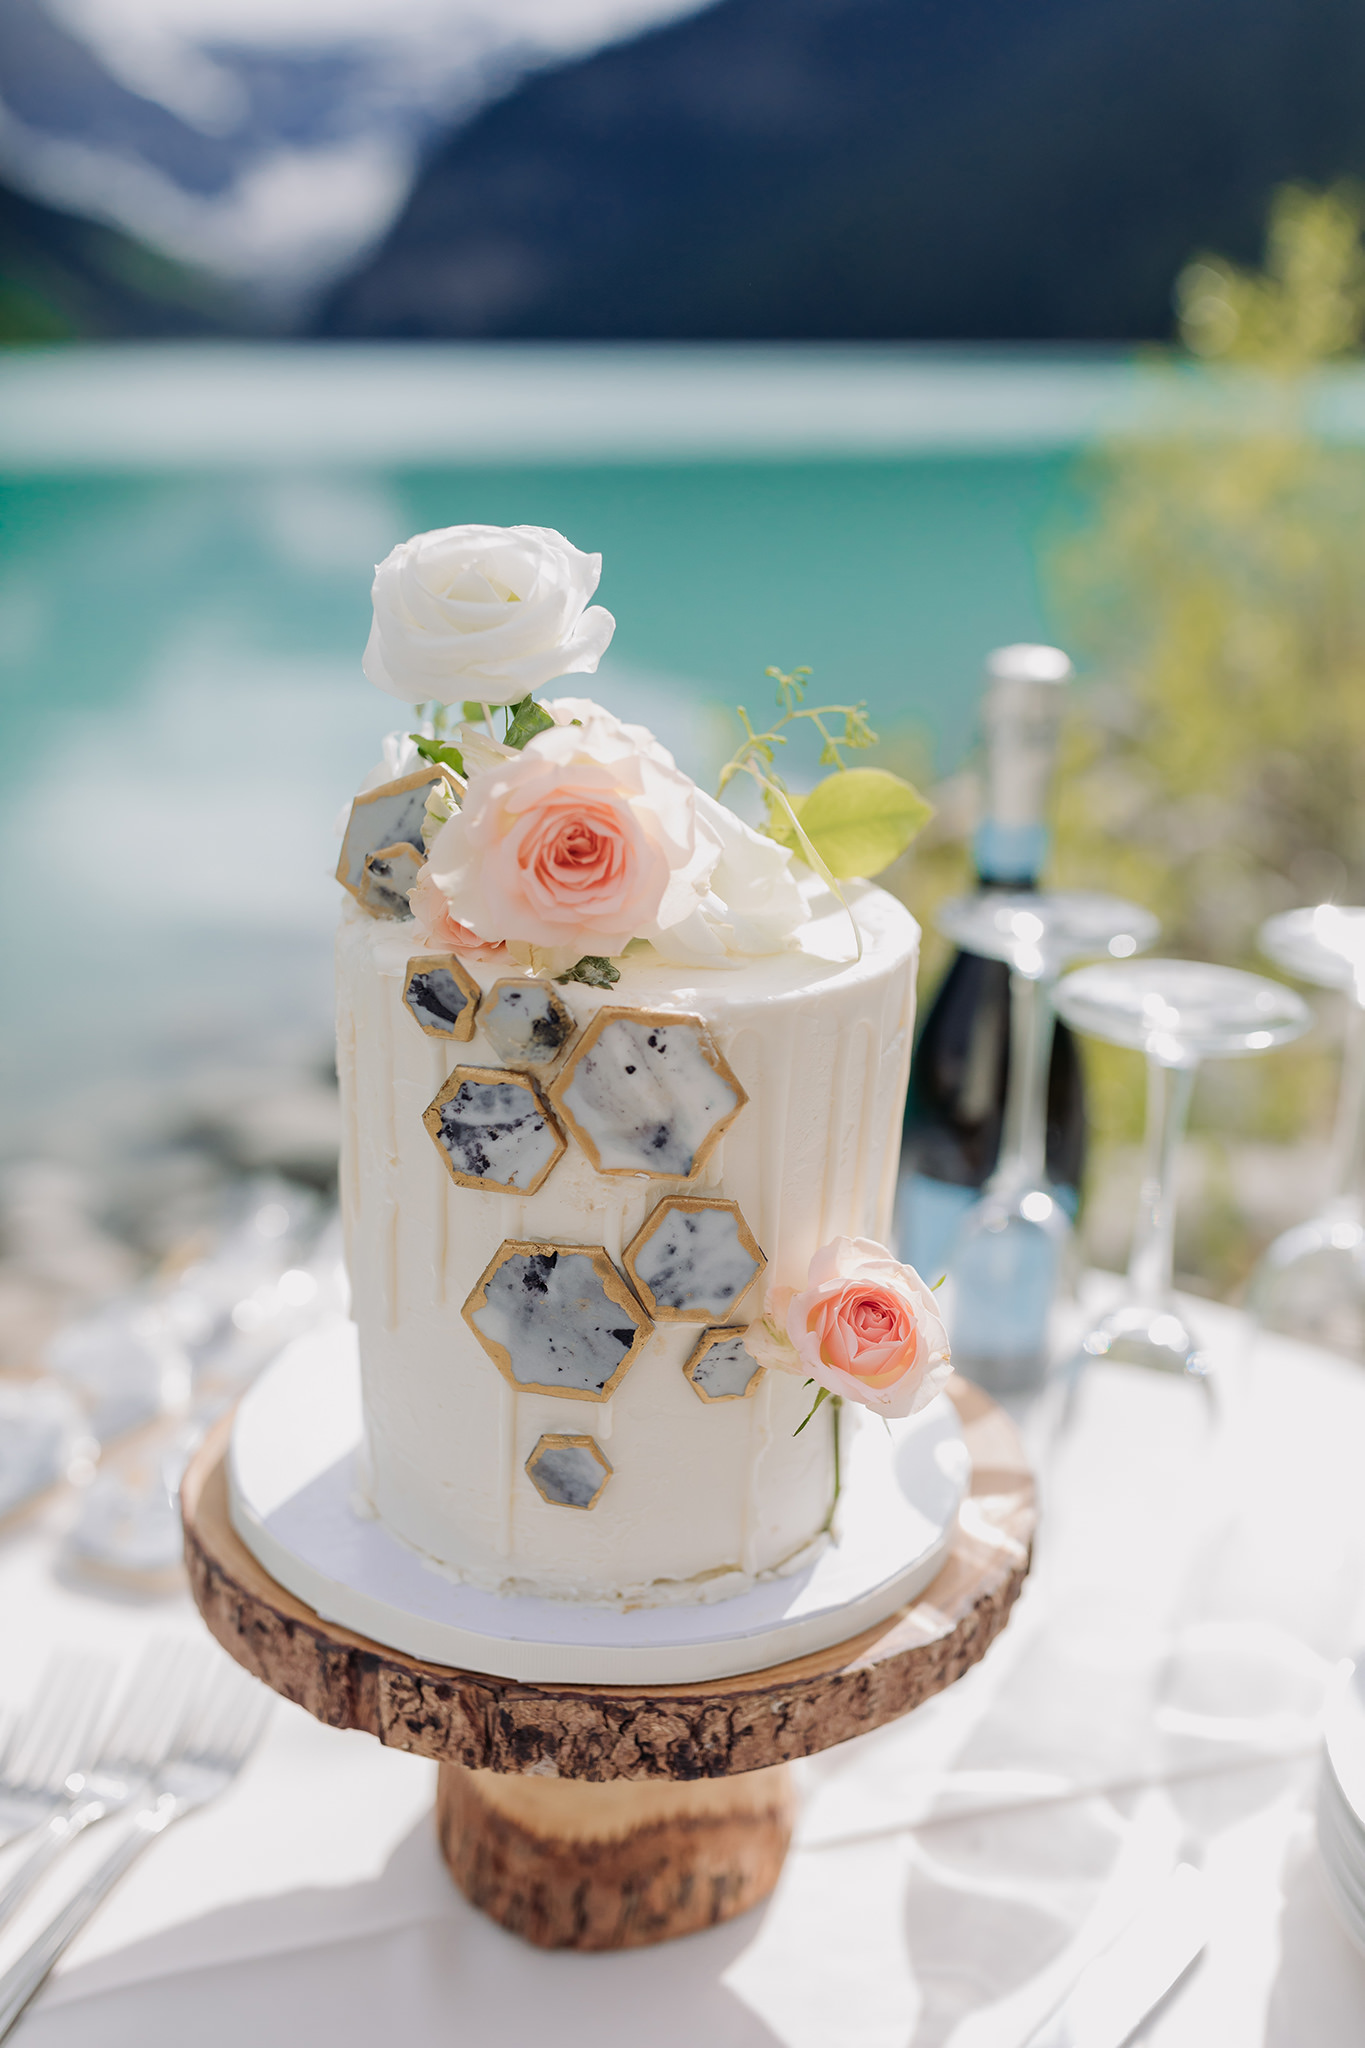 lake louise wedding cake at wedding ceremony